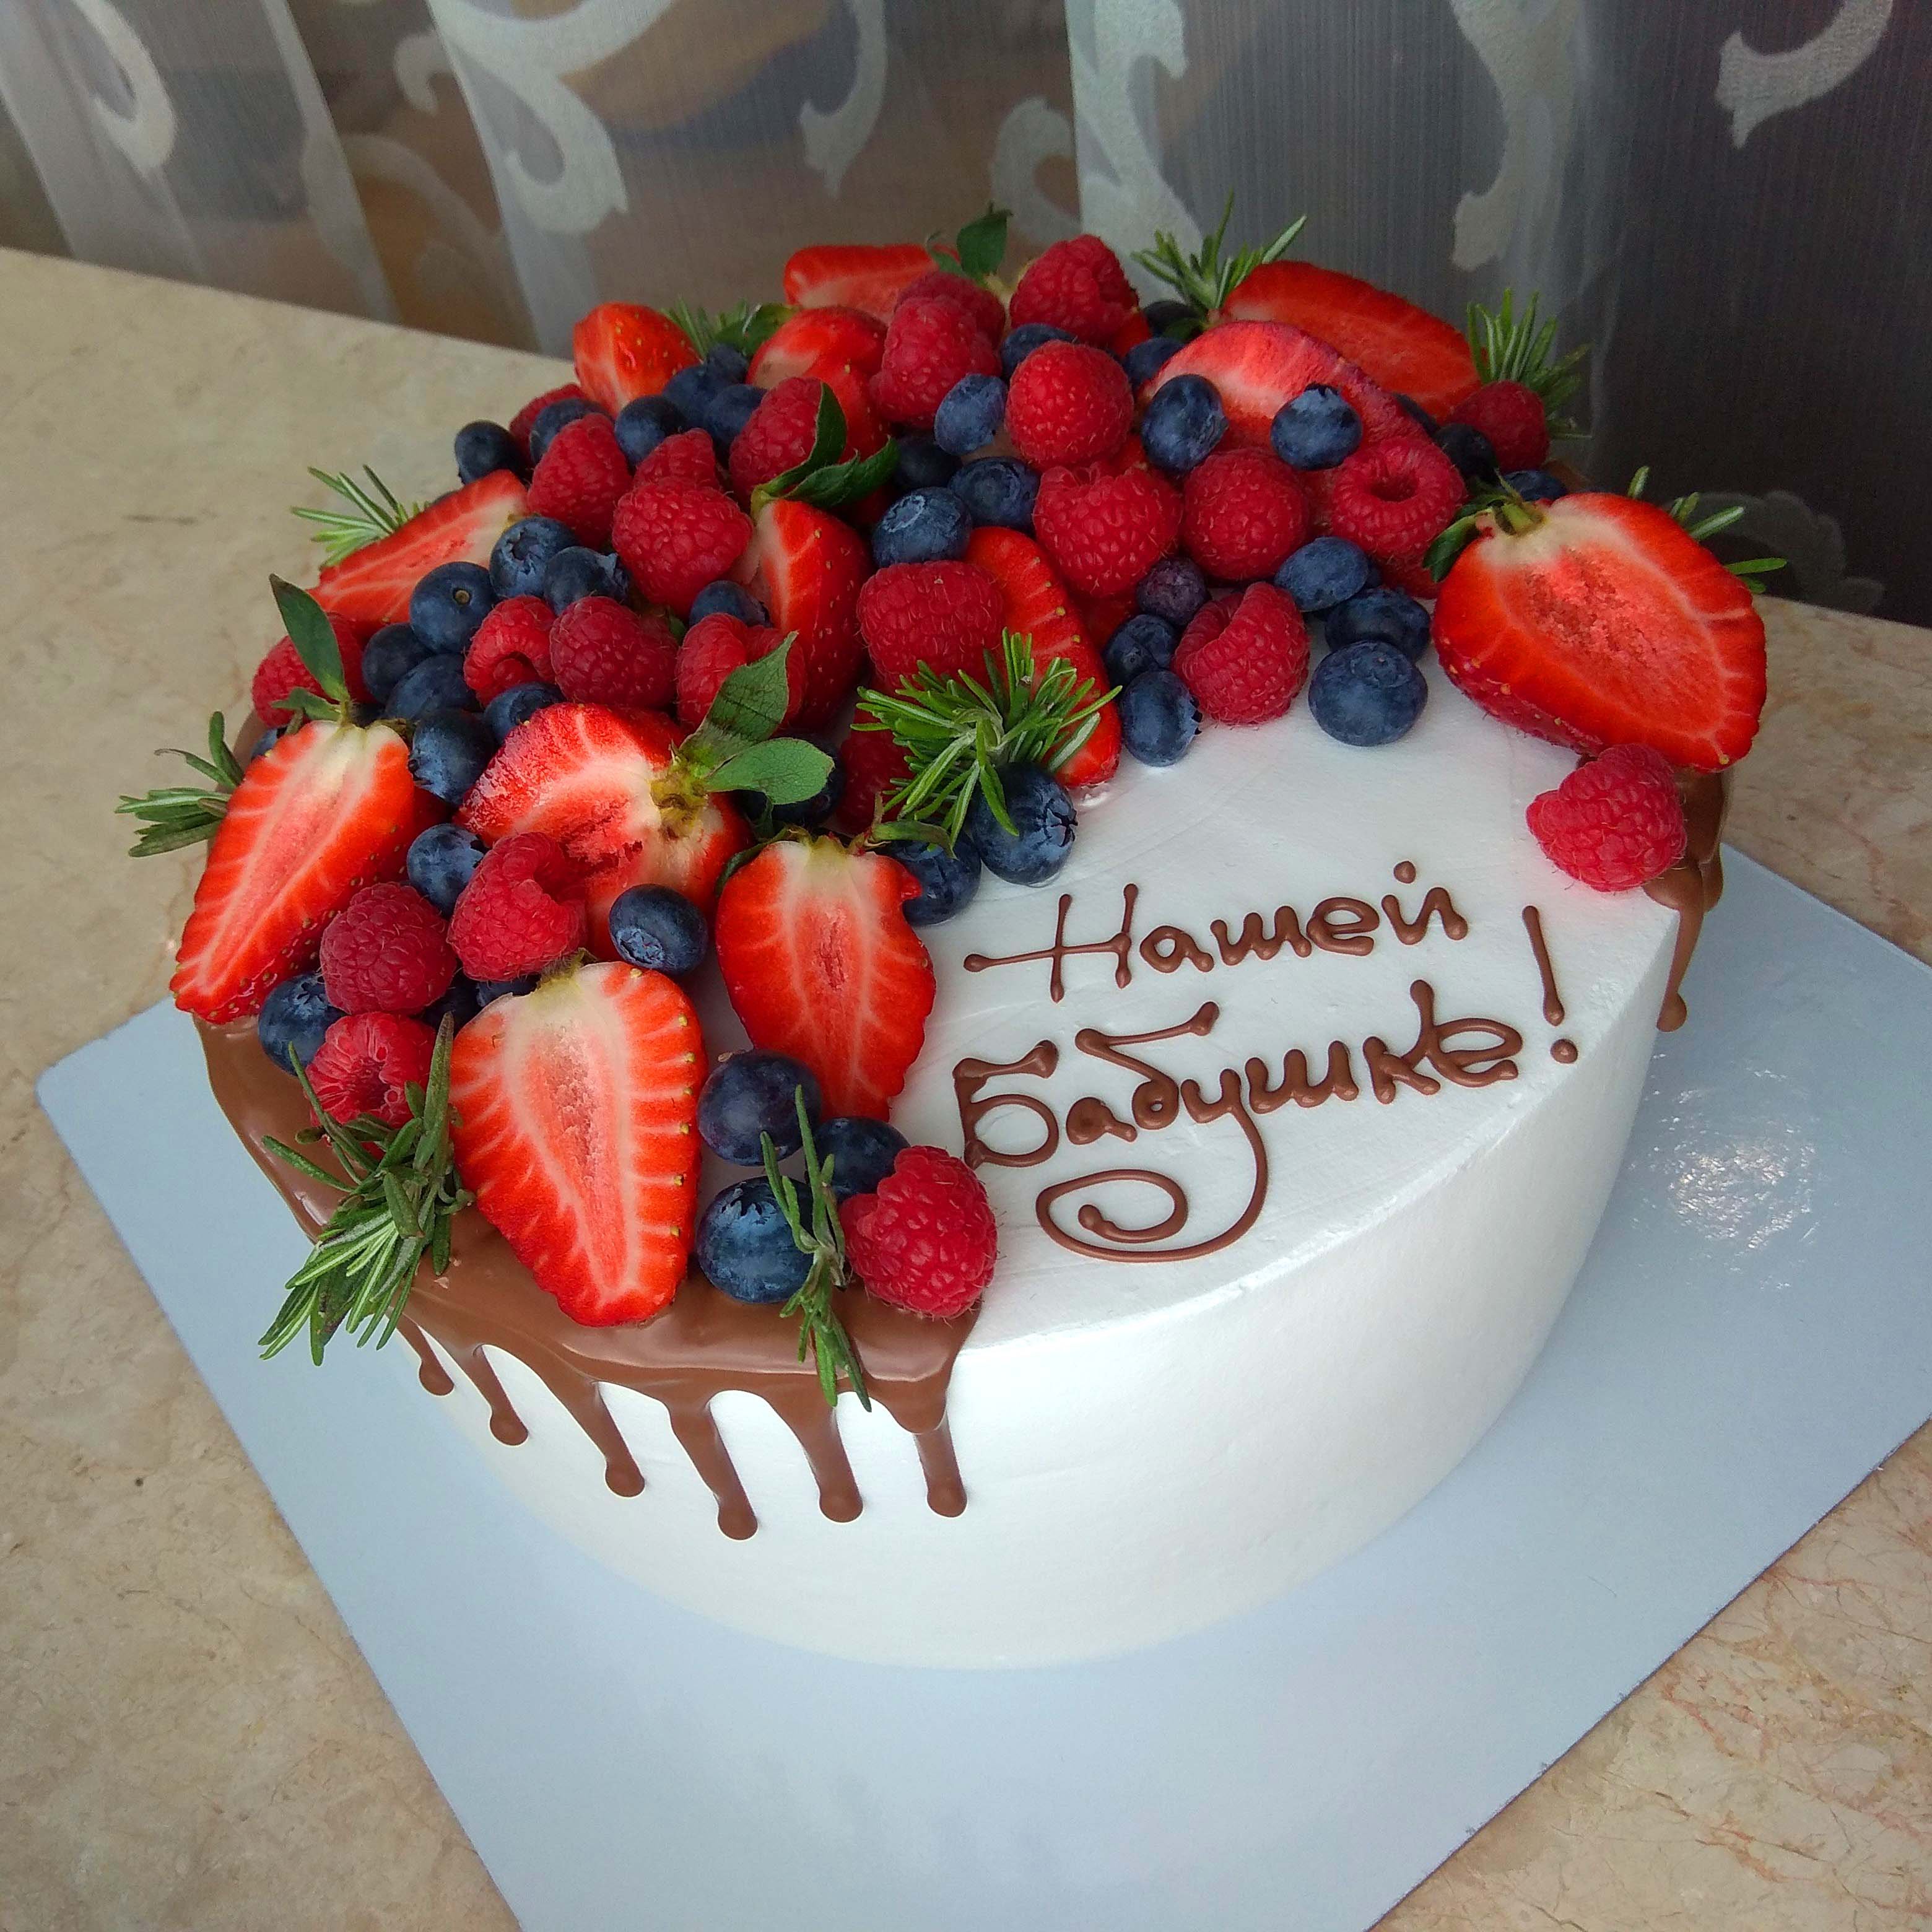 торт для бабушки на день рождения фото